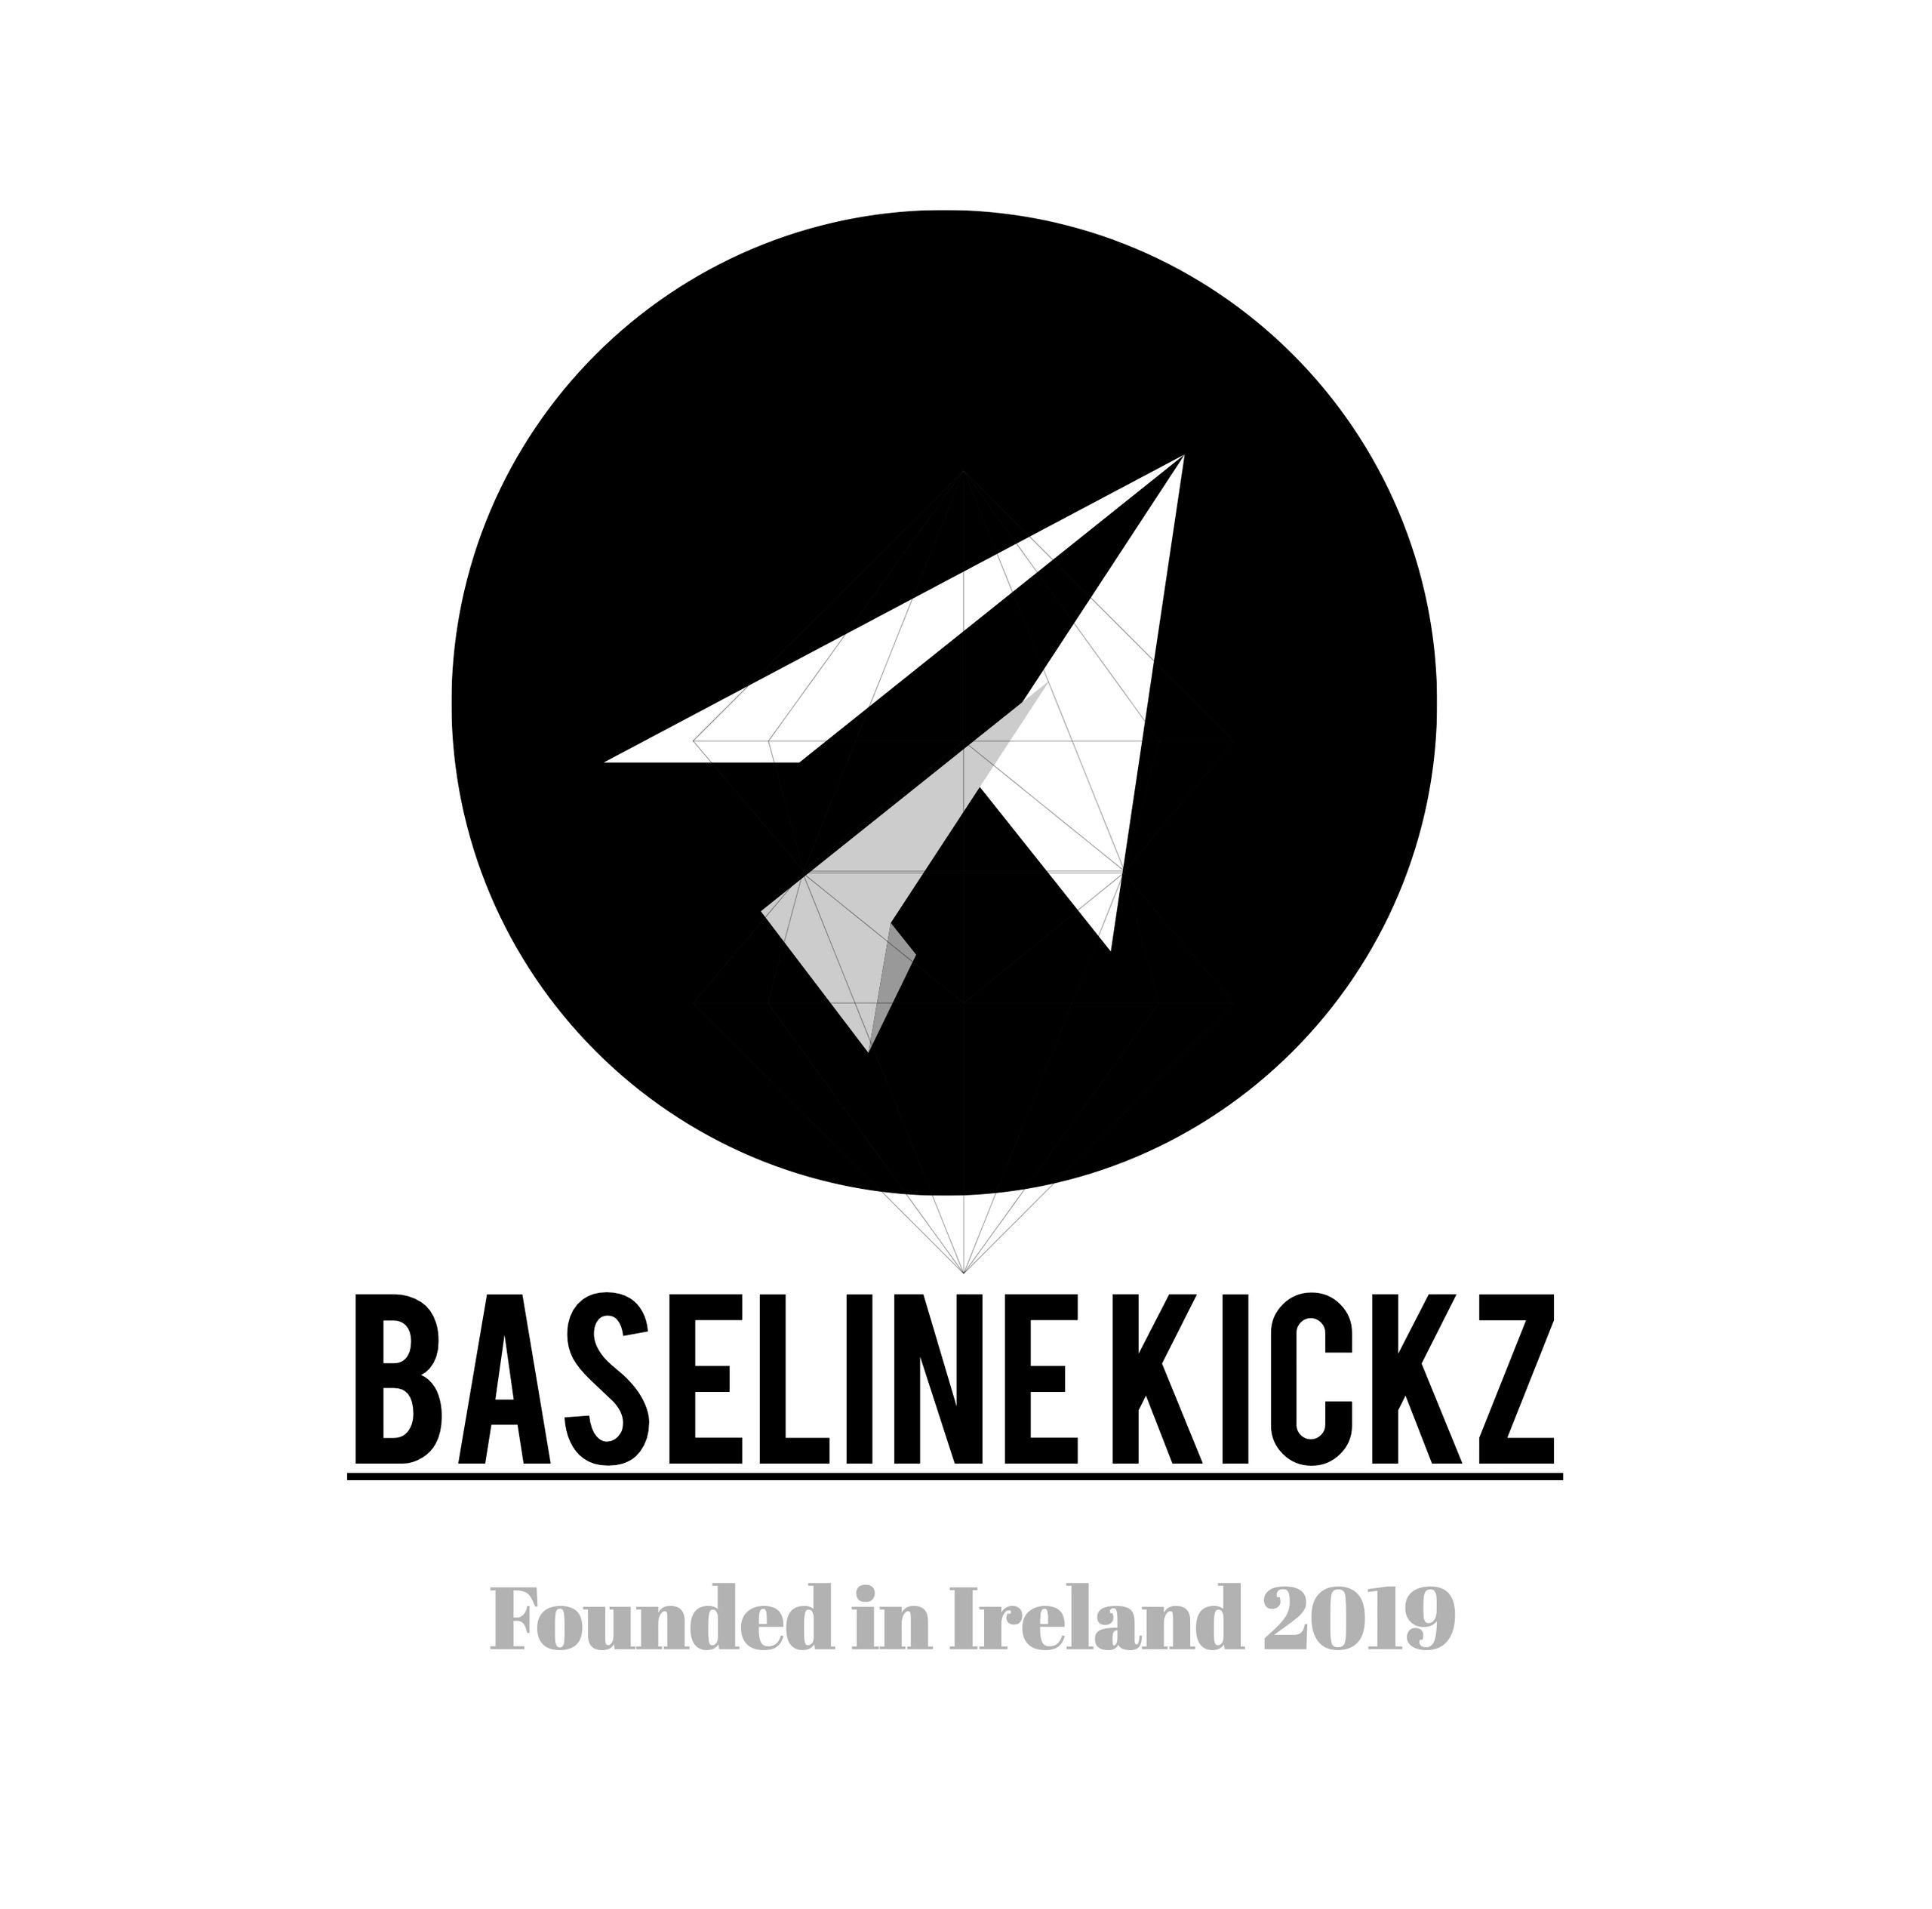 Baseline Kickz 